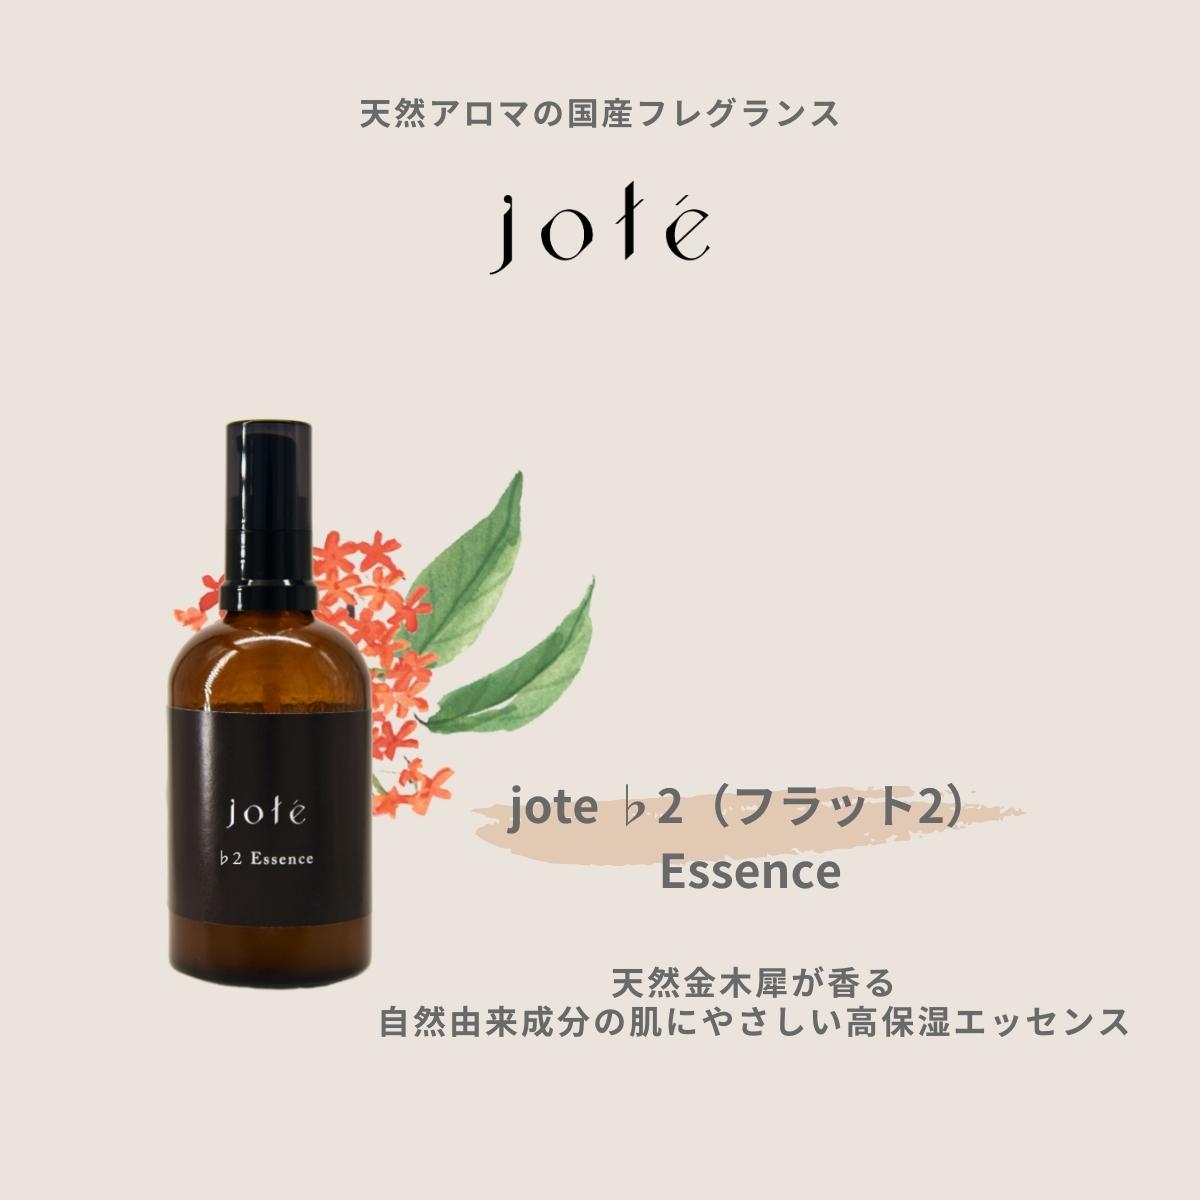 jote ♭2（フラット２）Essence エッセンス 美容液 オーガニック由来指数98.28％ 自然由来指数99.84％ 金木犀 キンモクセイ  きんもくせい オスマンサス 国産 自然派 スキンケア